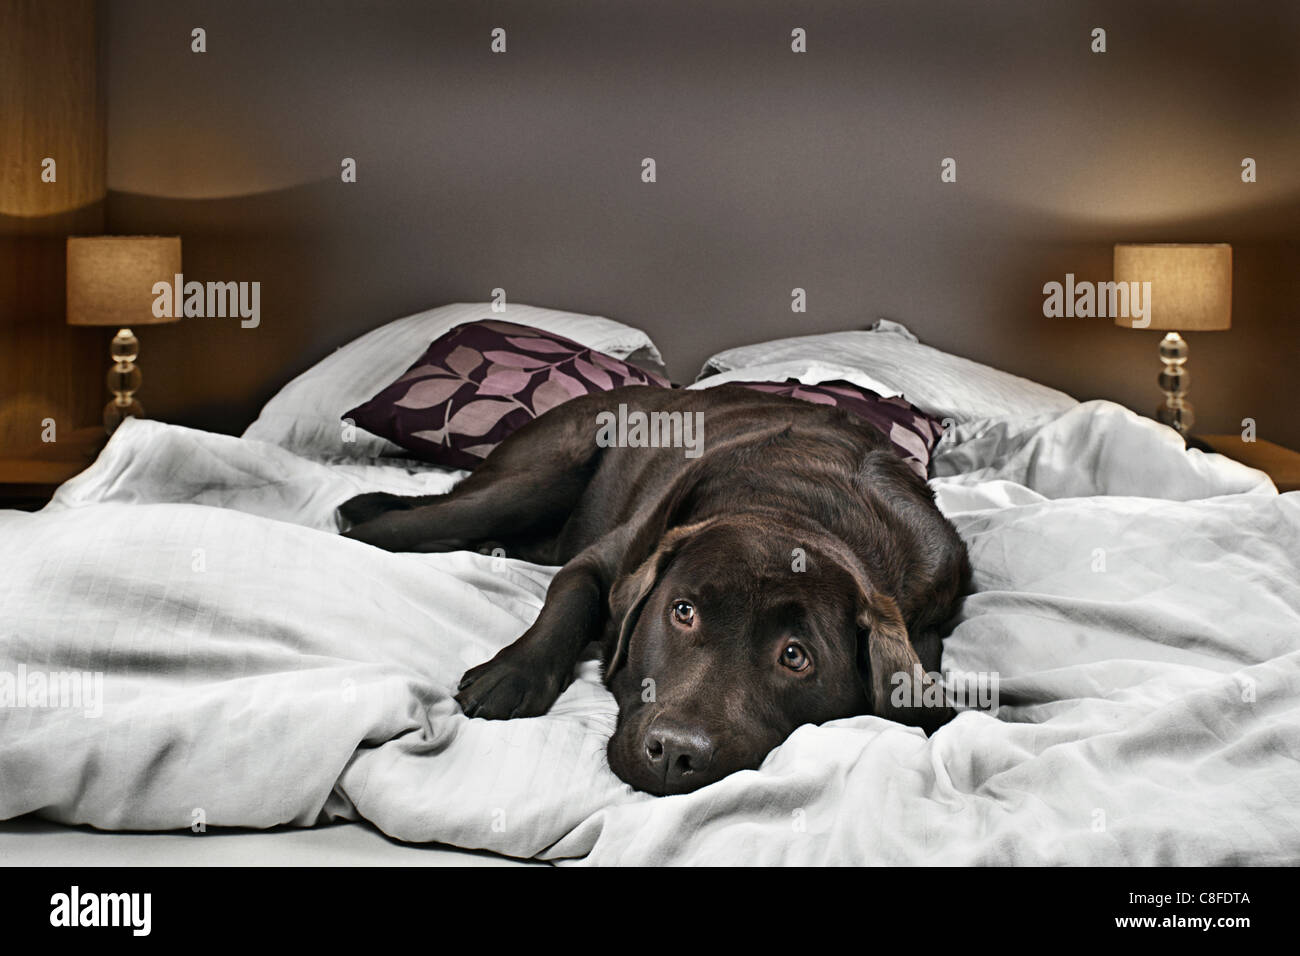 Labrador Chocolate en la buscando culpables Fotografía de - Alamy